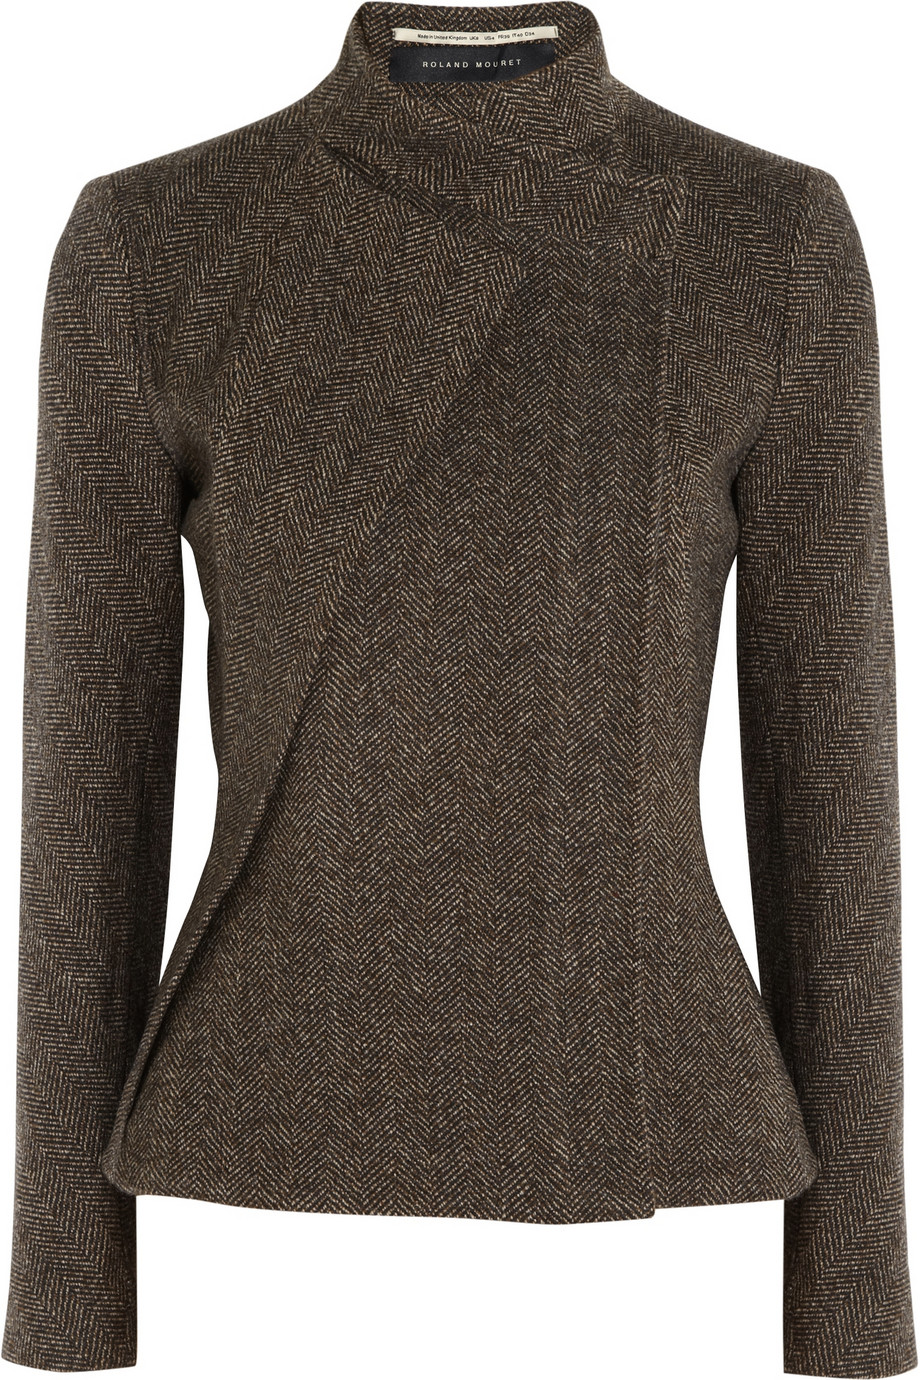 Lyst - Roland Mouret Tulkinghorn Herringbone Tweed Jacket in Brown